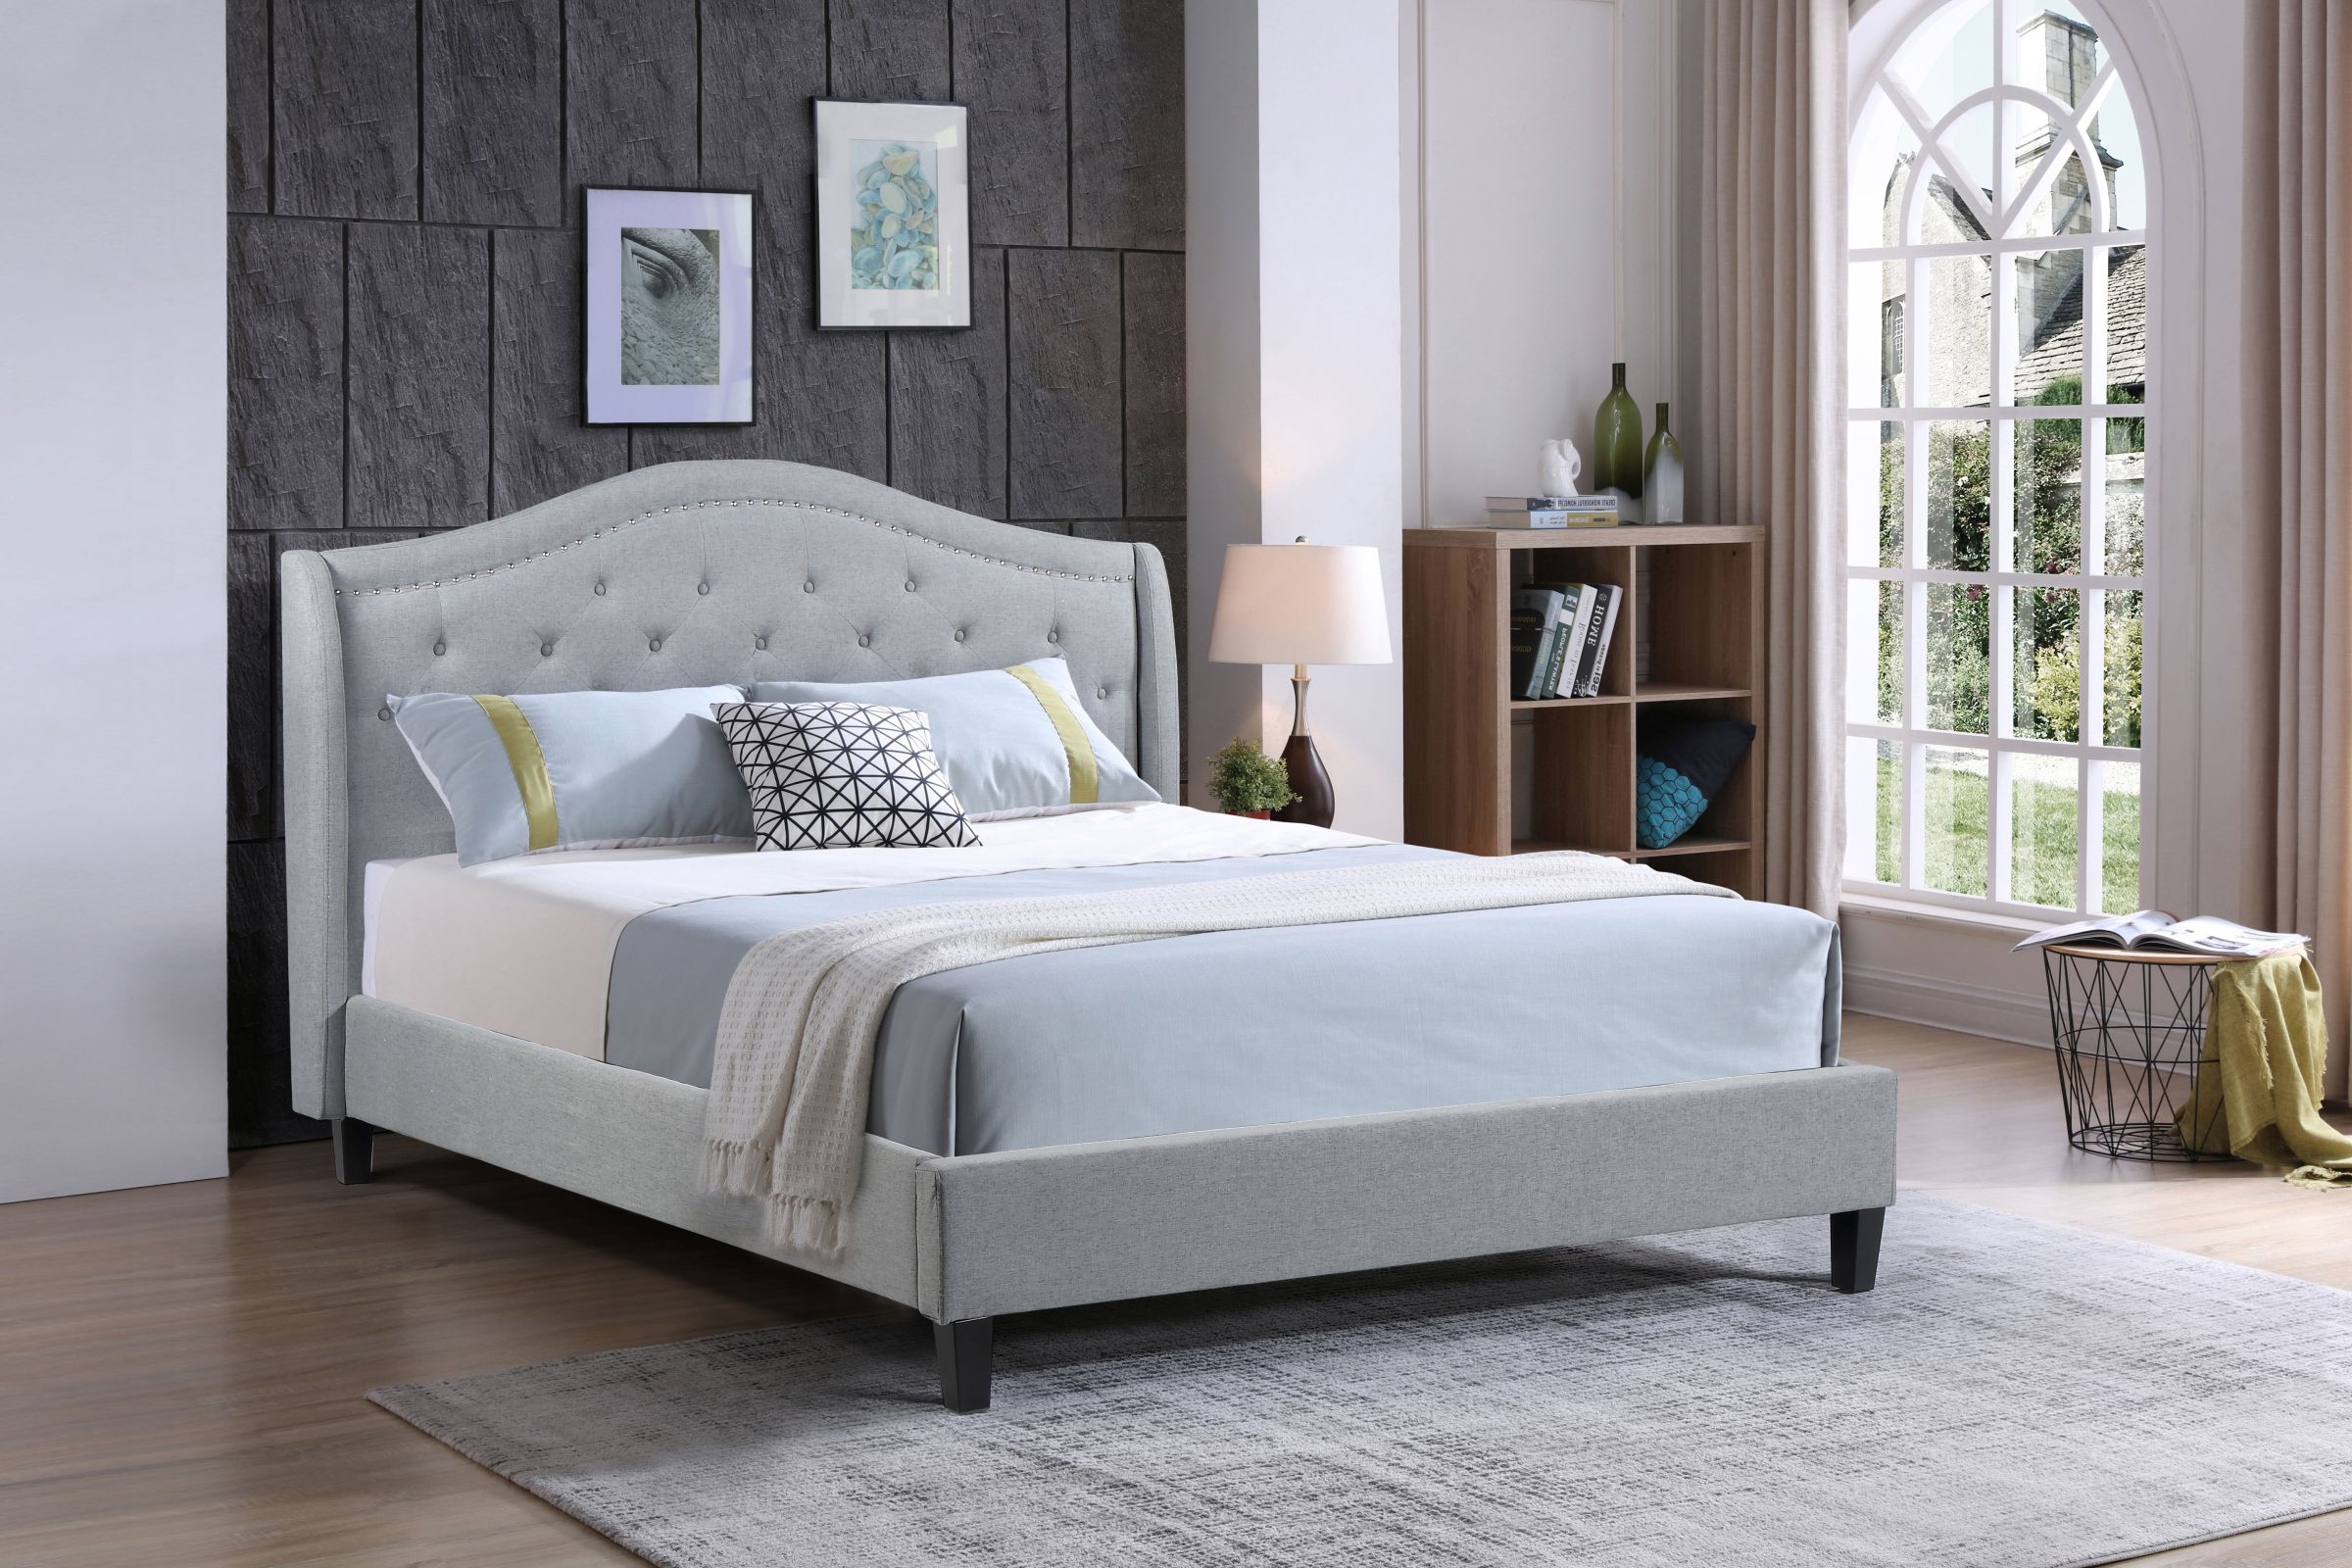 Twilight - Upholstered Platform Bed, Grey – Queen